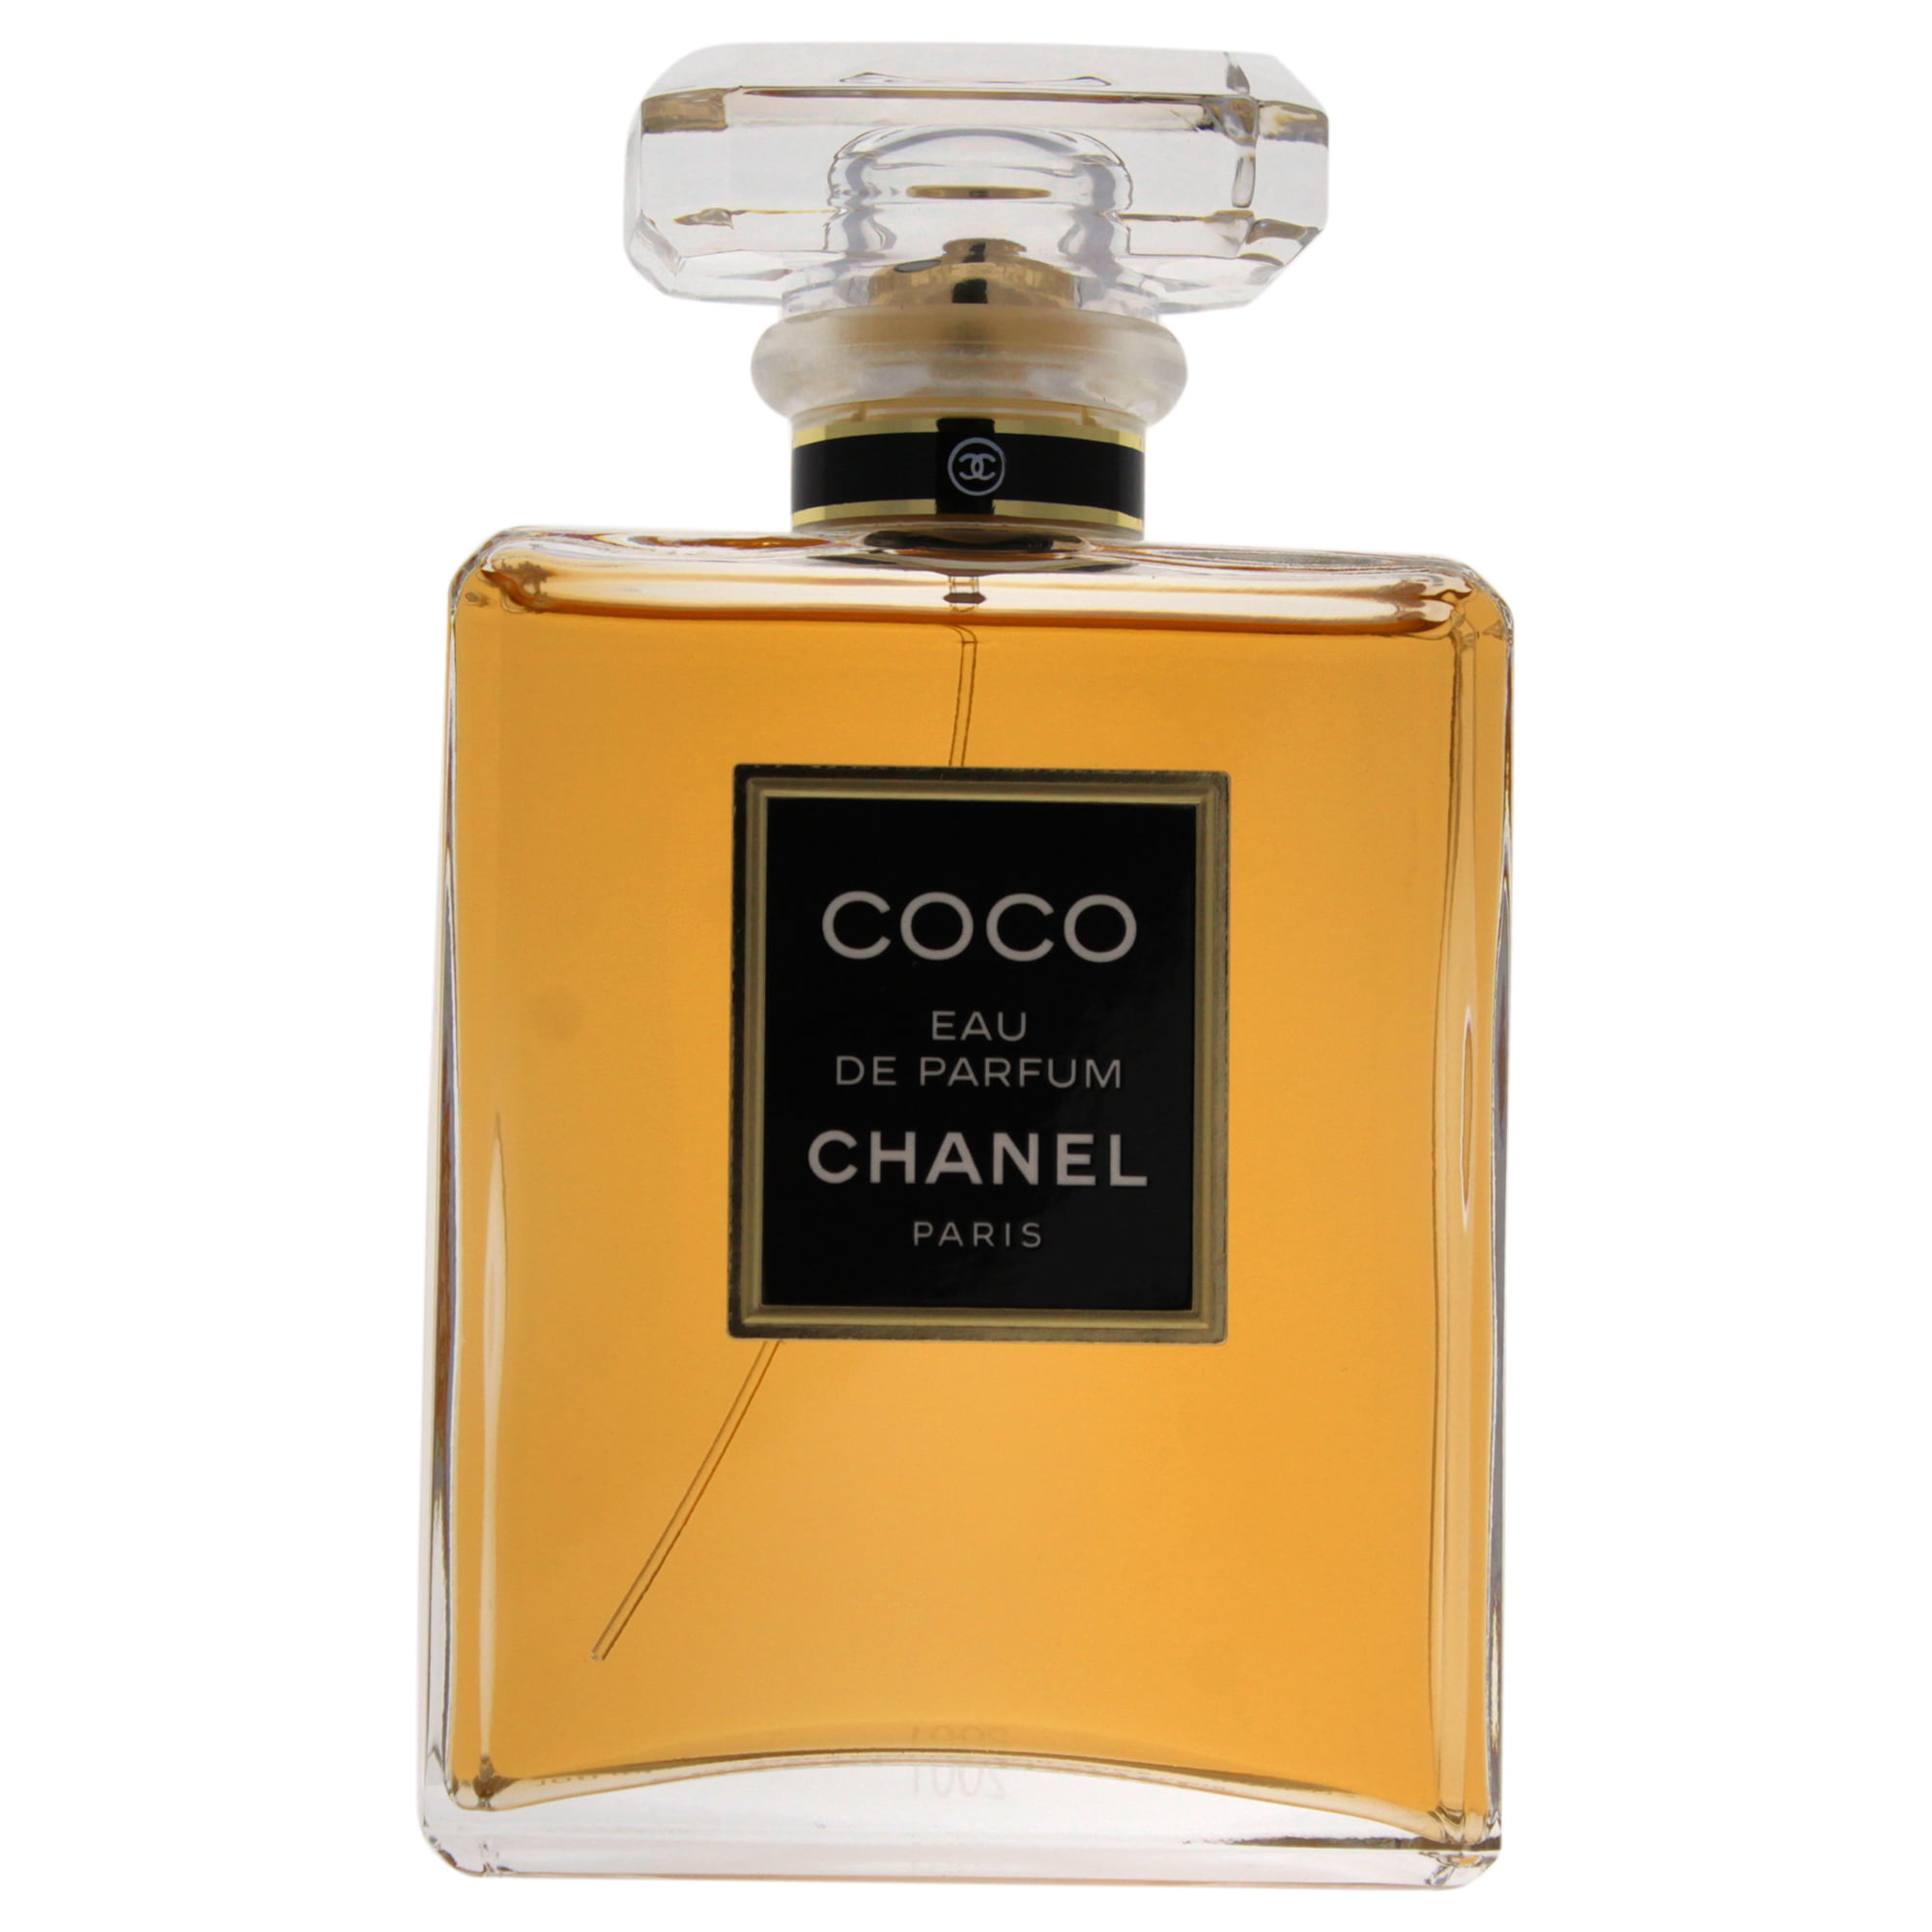 CHANEL Coco Eau de Parfum, Perfume for Women, 3.4 Oz